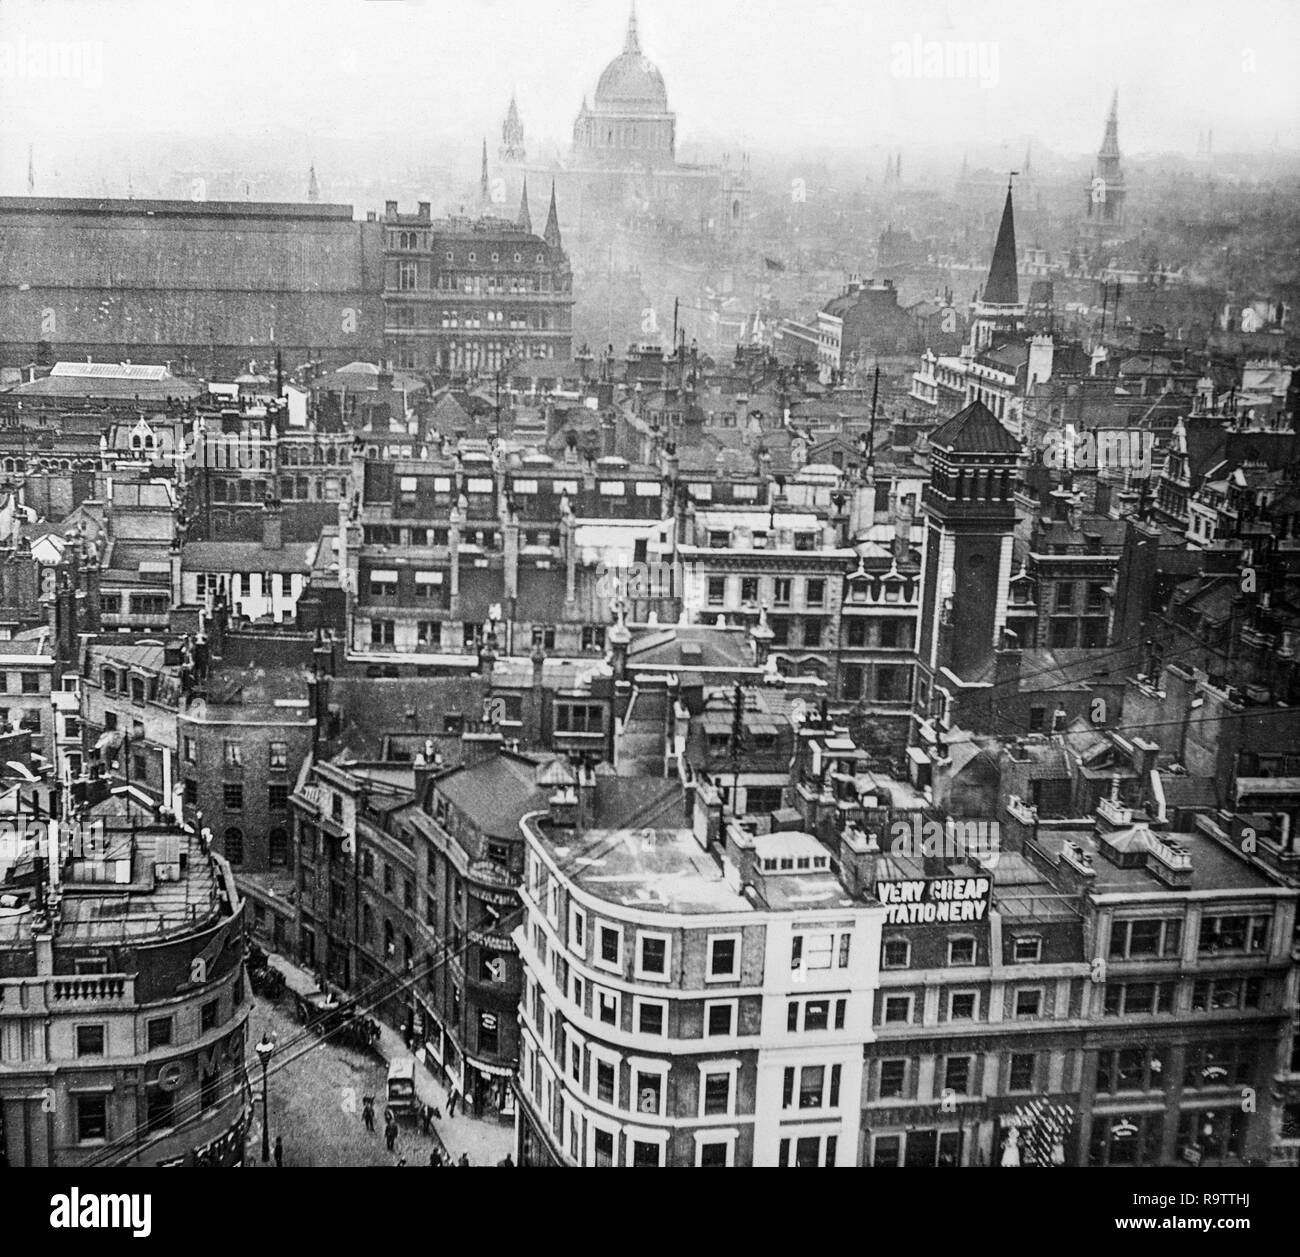 Inizio del ventesimo secolo fotografia in bianco e nero eseguite a partire dalla parte superiore del monumento nel centro di Londra, guardando ad ovest sopra i tetti della città con la Cattedrale di Saint Paul nello skyline della citta'. Foto Stock